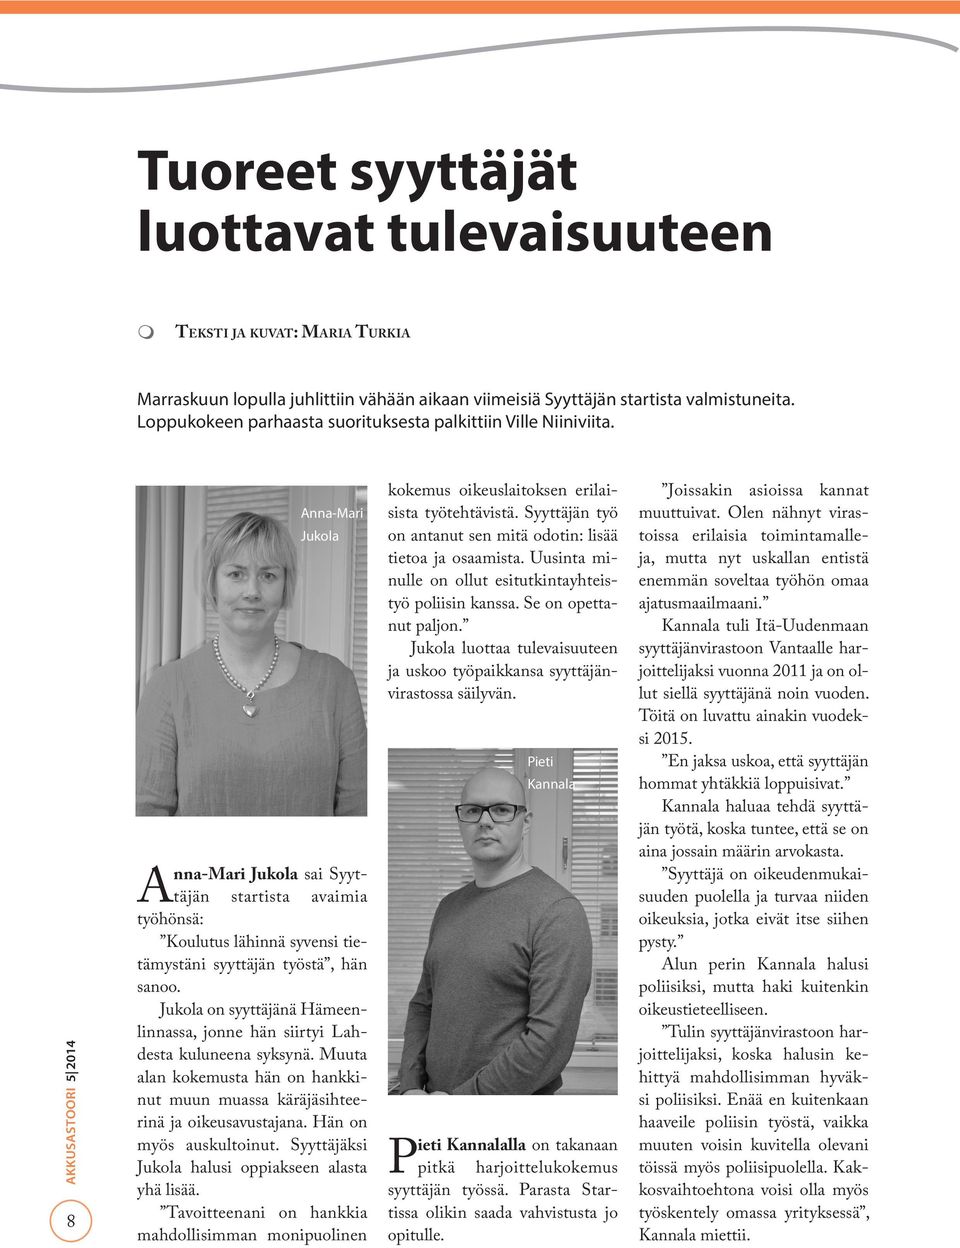 8 Anna-Mari Jukola Anna-Mari Jukola sai Syyttäjän startista avaimia työhönsä: Koulutus lähinnä syvensi tietämystäni syyttäjän työstä, hän sanoo.